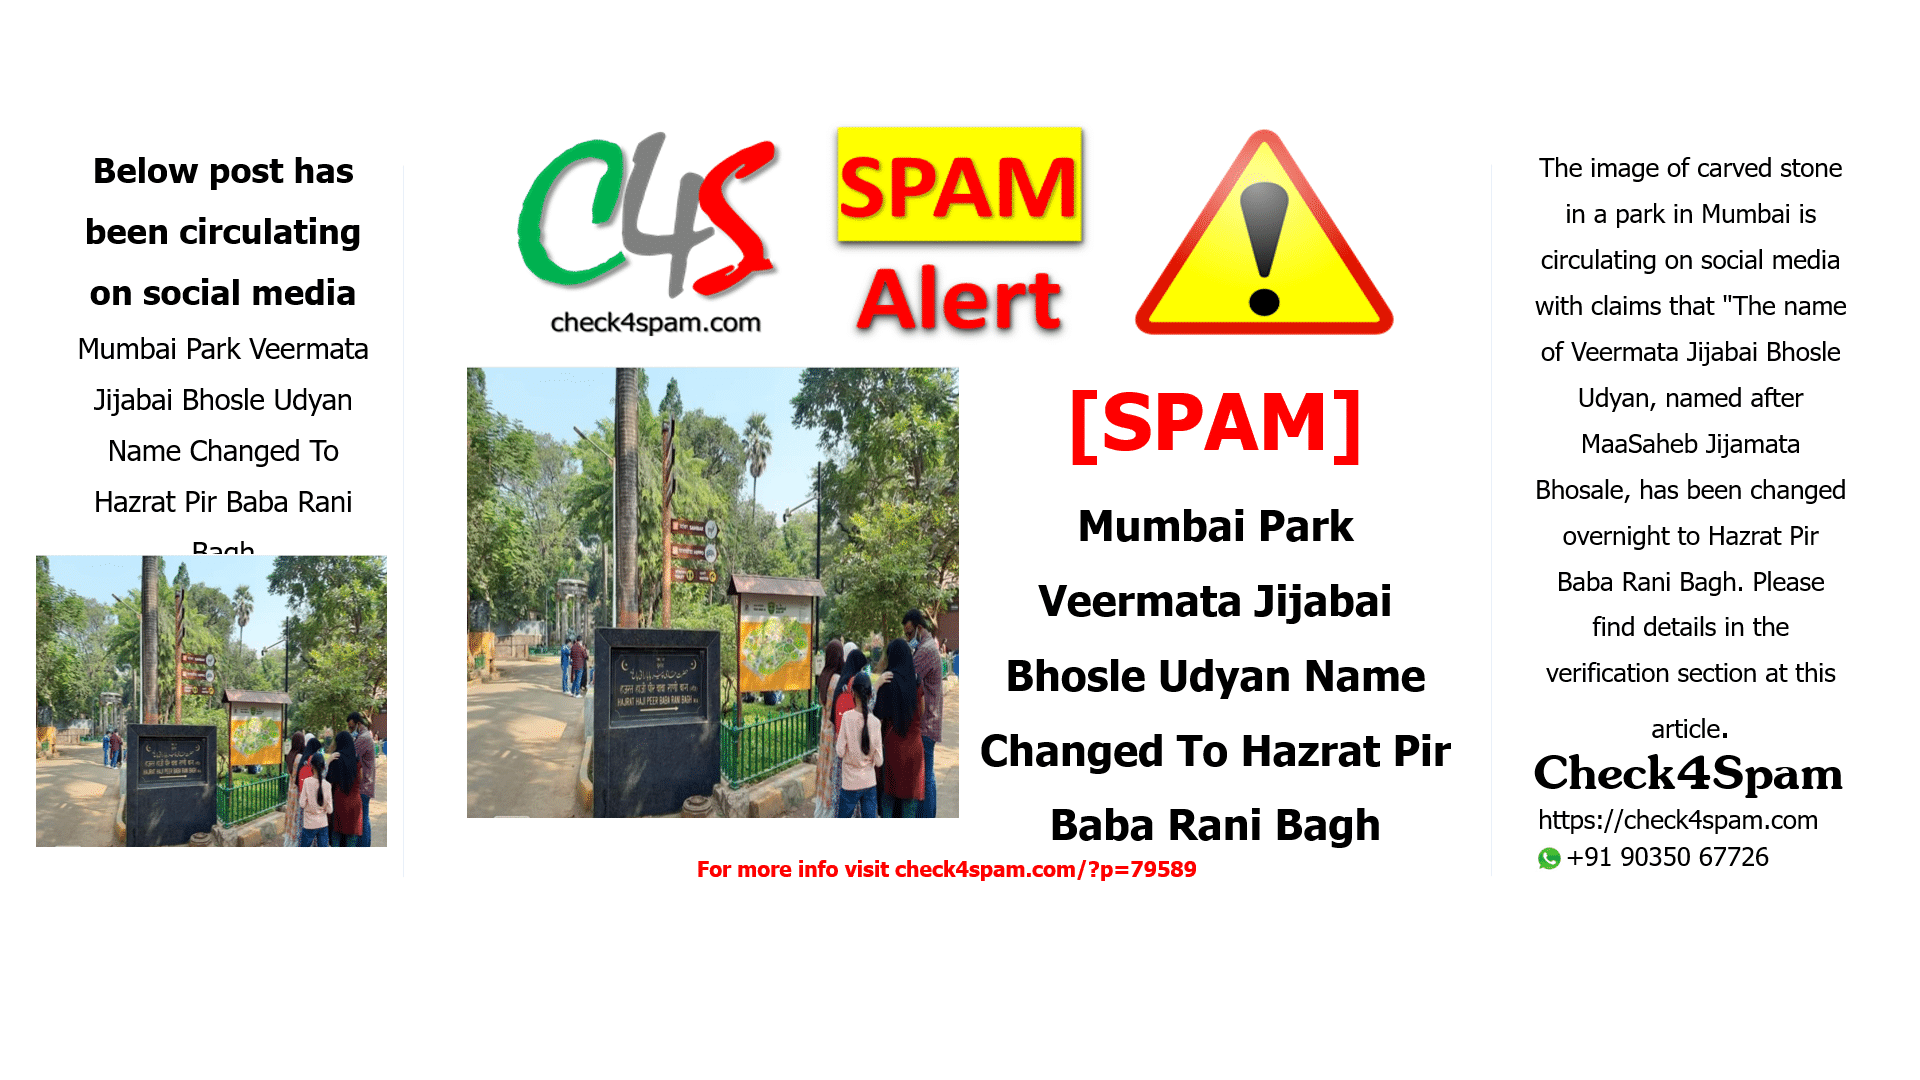 Mumbai Park Veermata Jijabai Bhosle Udyan Name Changed To Hazrat Pir Baba Rani Bagh